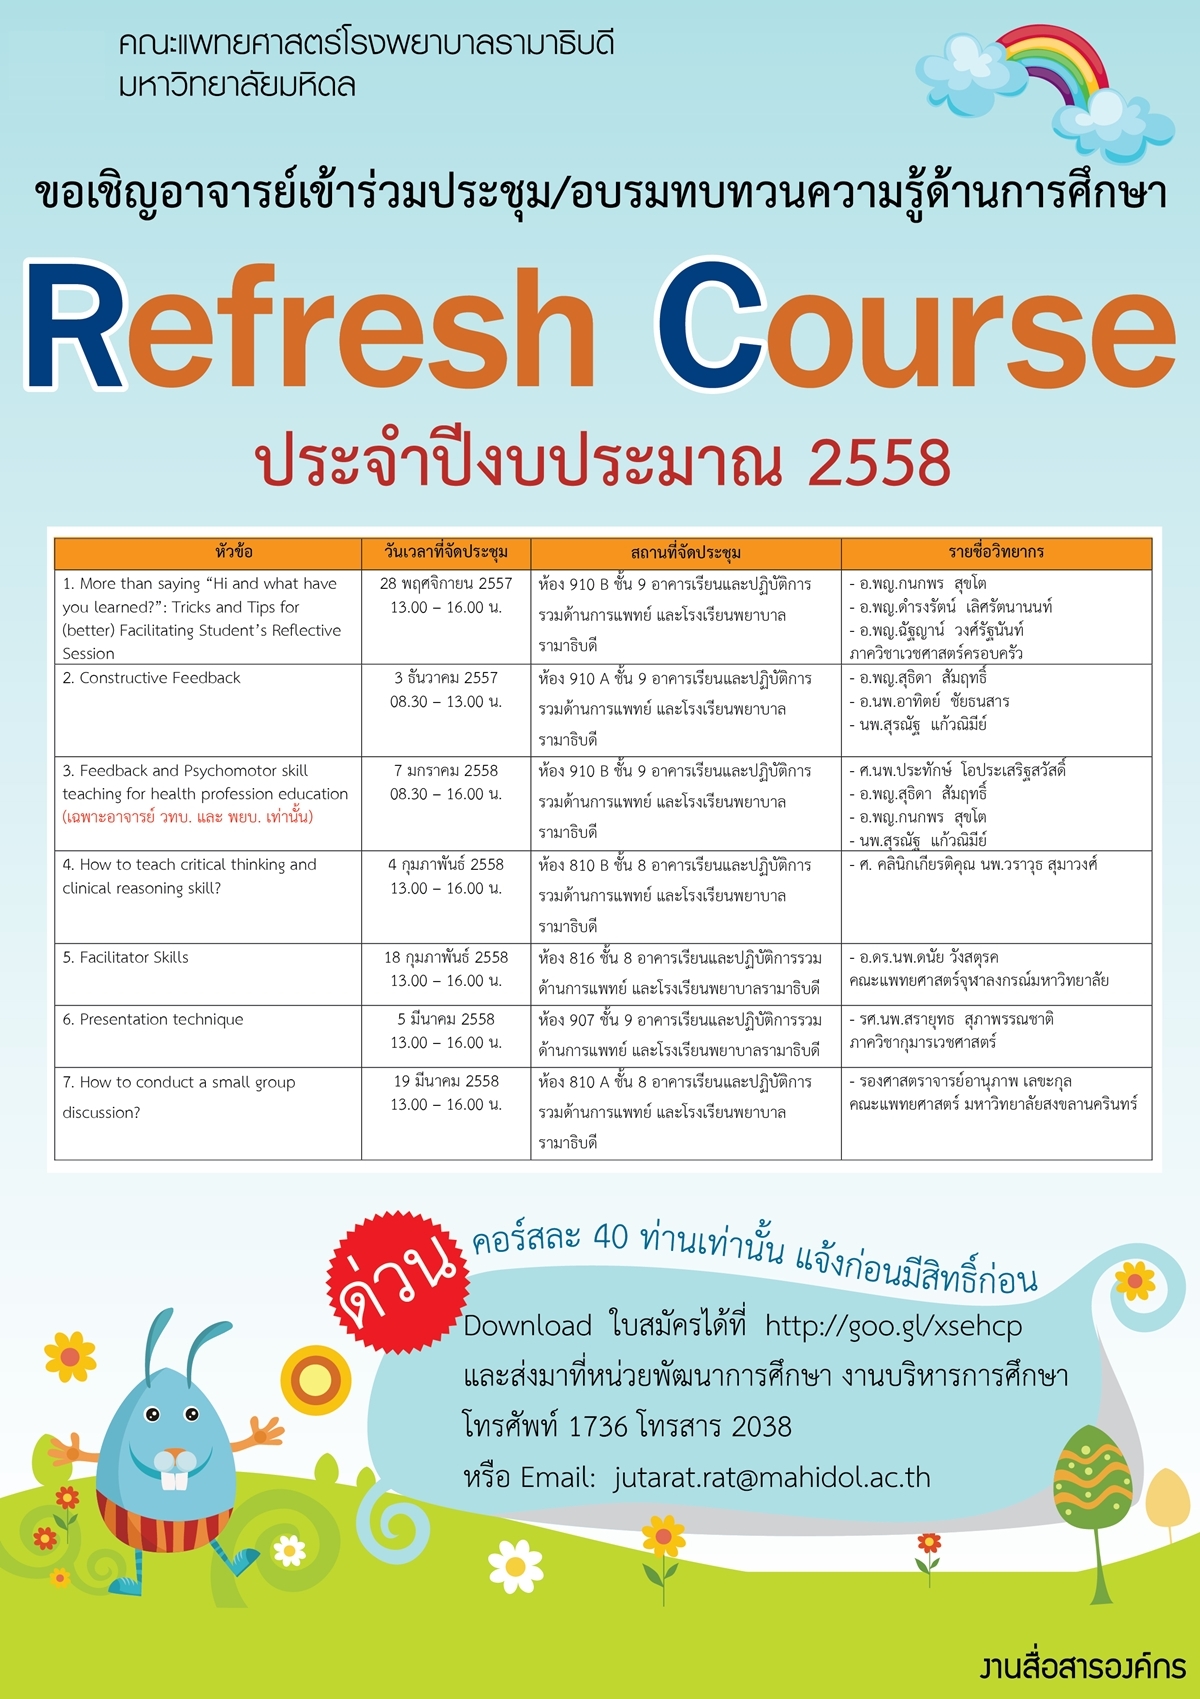 การประชุม/อบรมทบทวนความรู้ด้านการศึกษา (Refresh Course) ประจำปีงบประมาณ 2558